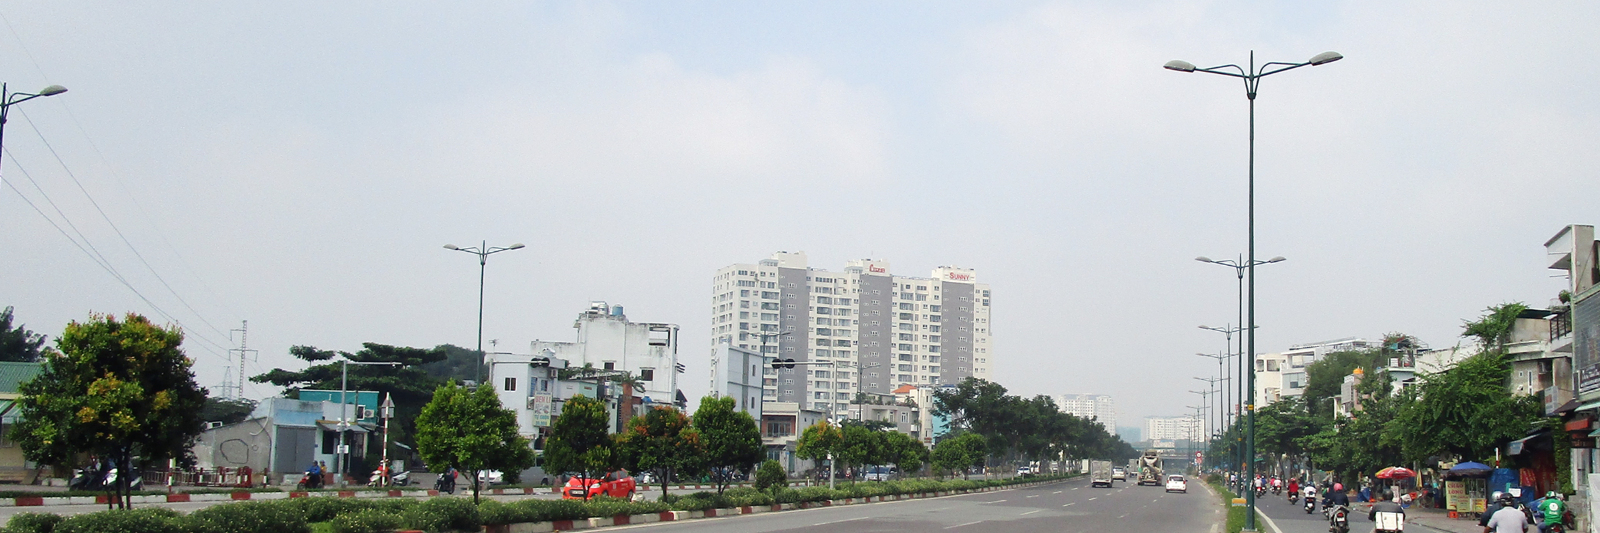 Hệ thống chiếu sáng đại lộ Phạm Văn Đồng